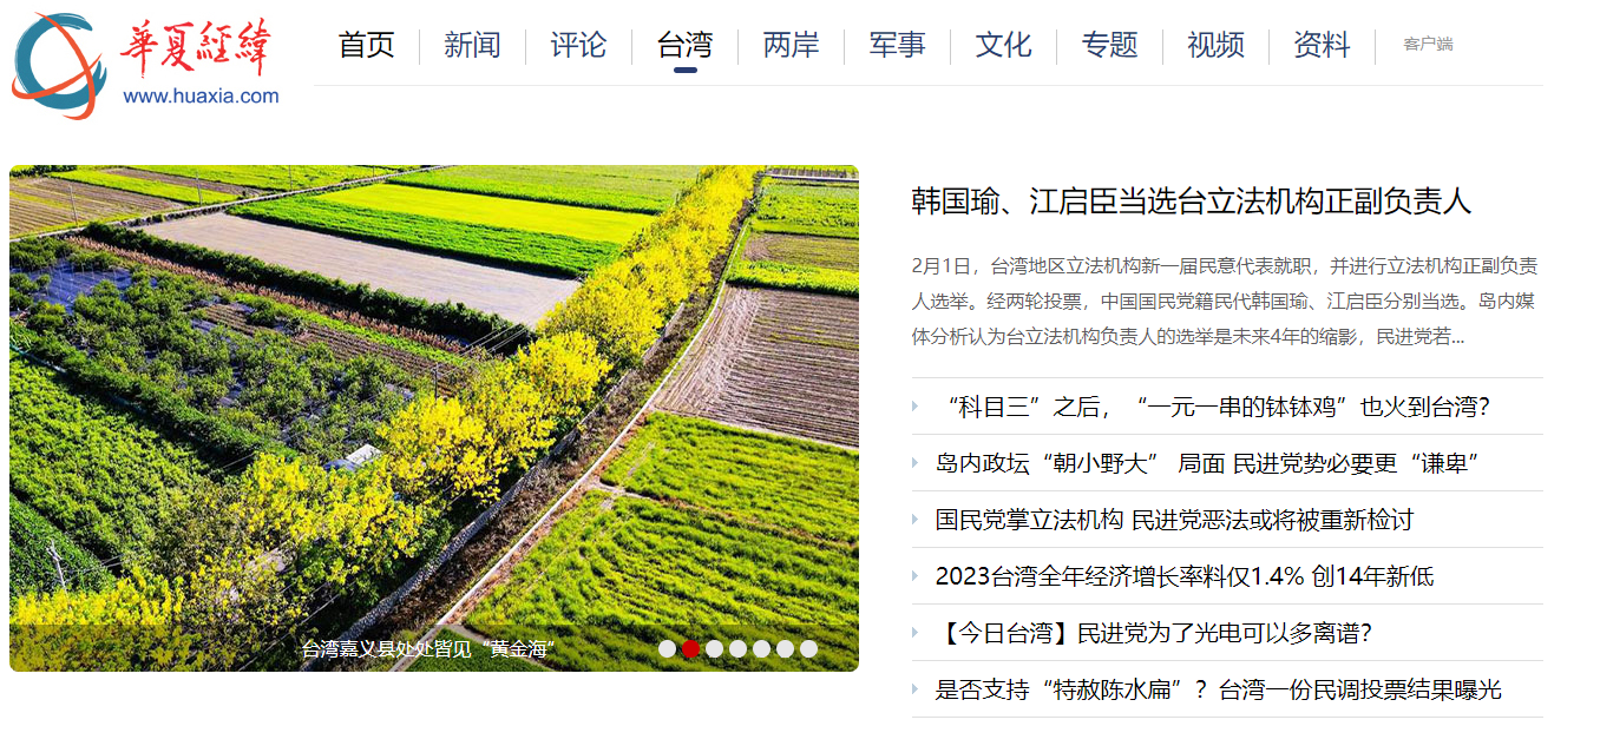 《華夏經緯網》的簡體原版，韓國瑜的名字沒有寫錯